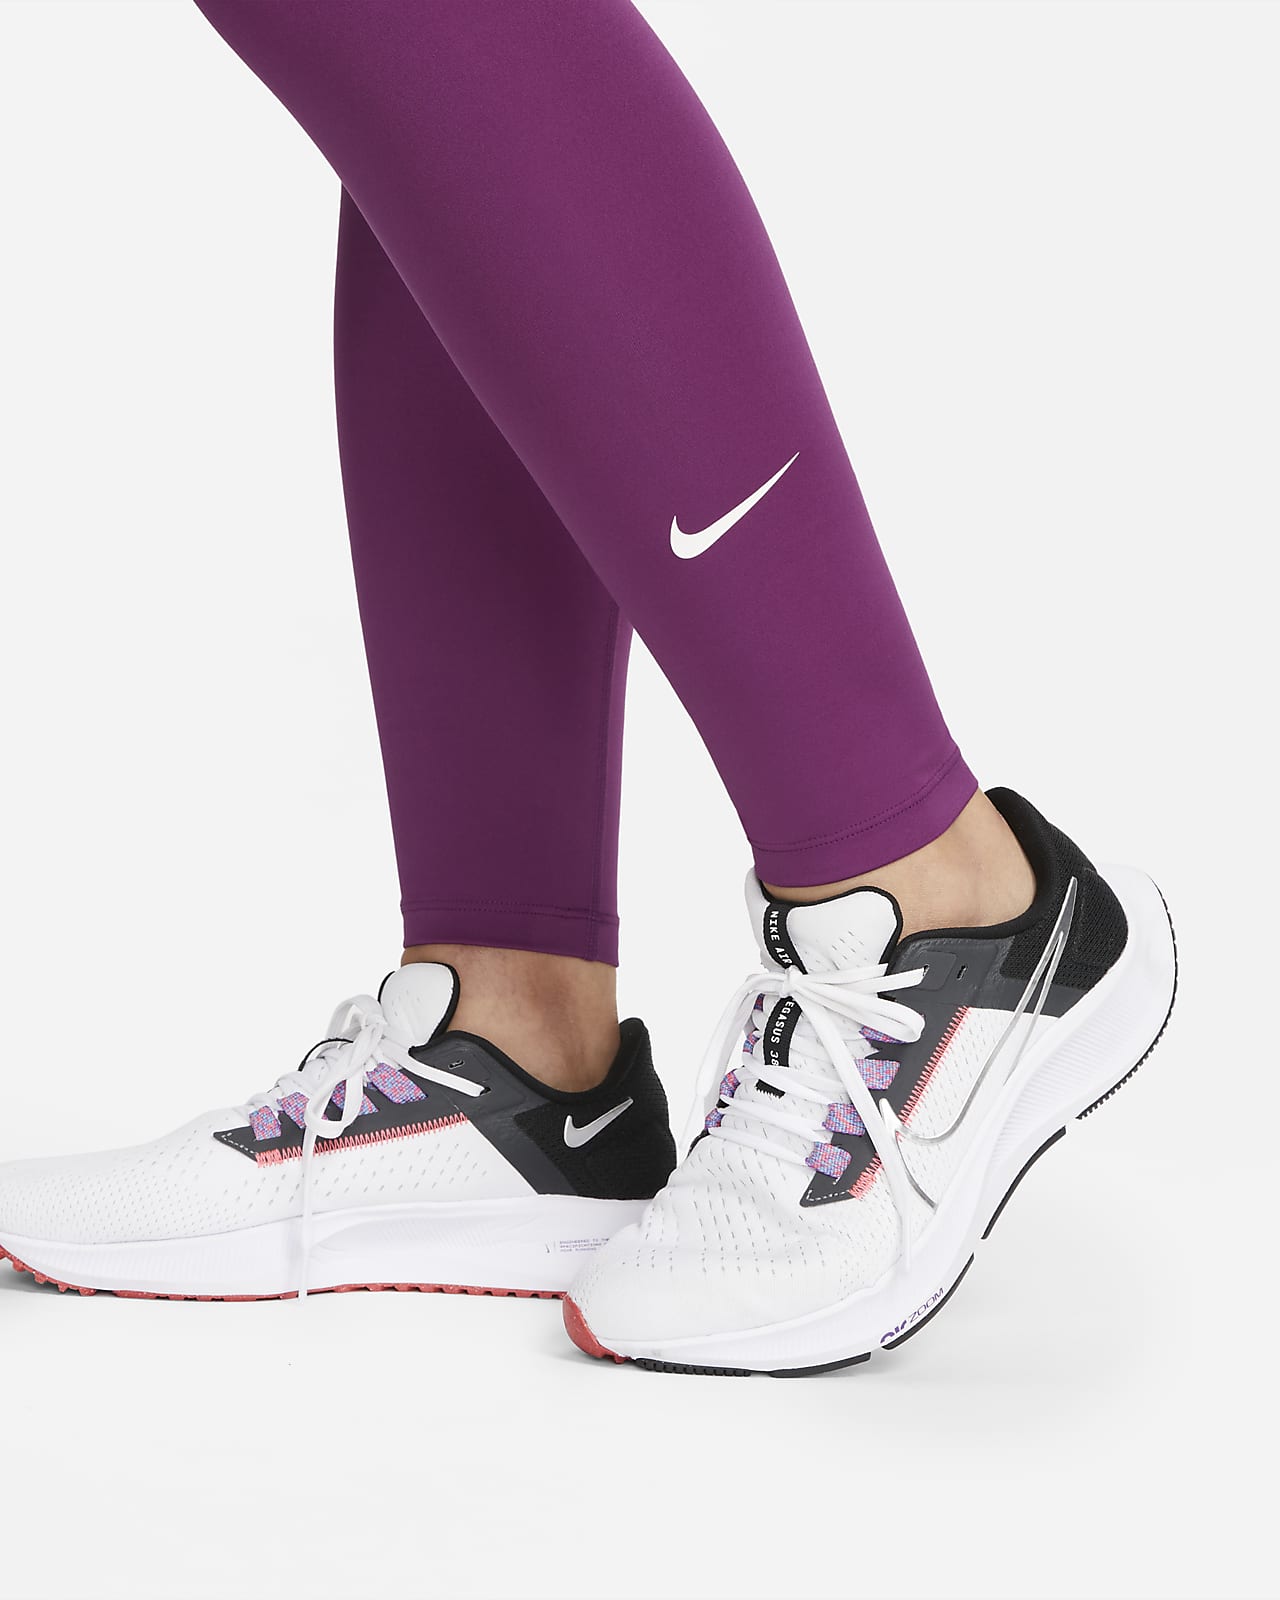 Nike One (M) Women's High-Rise Leggings (Maternity)